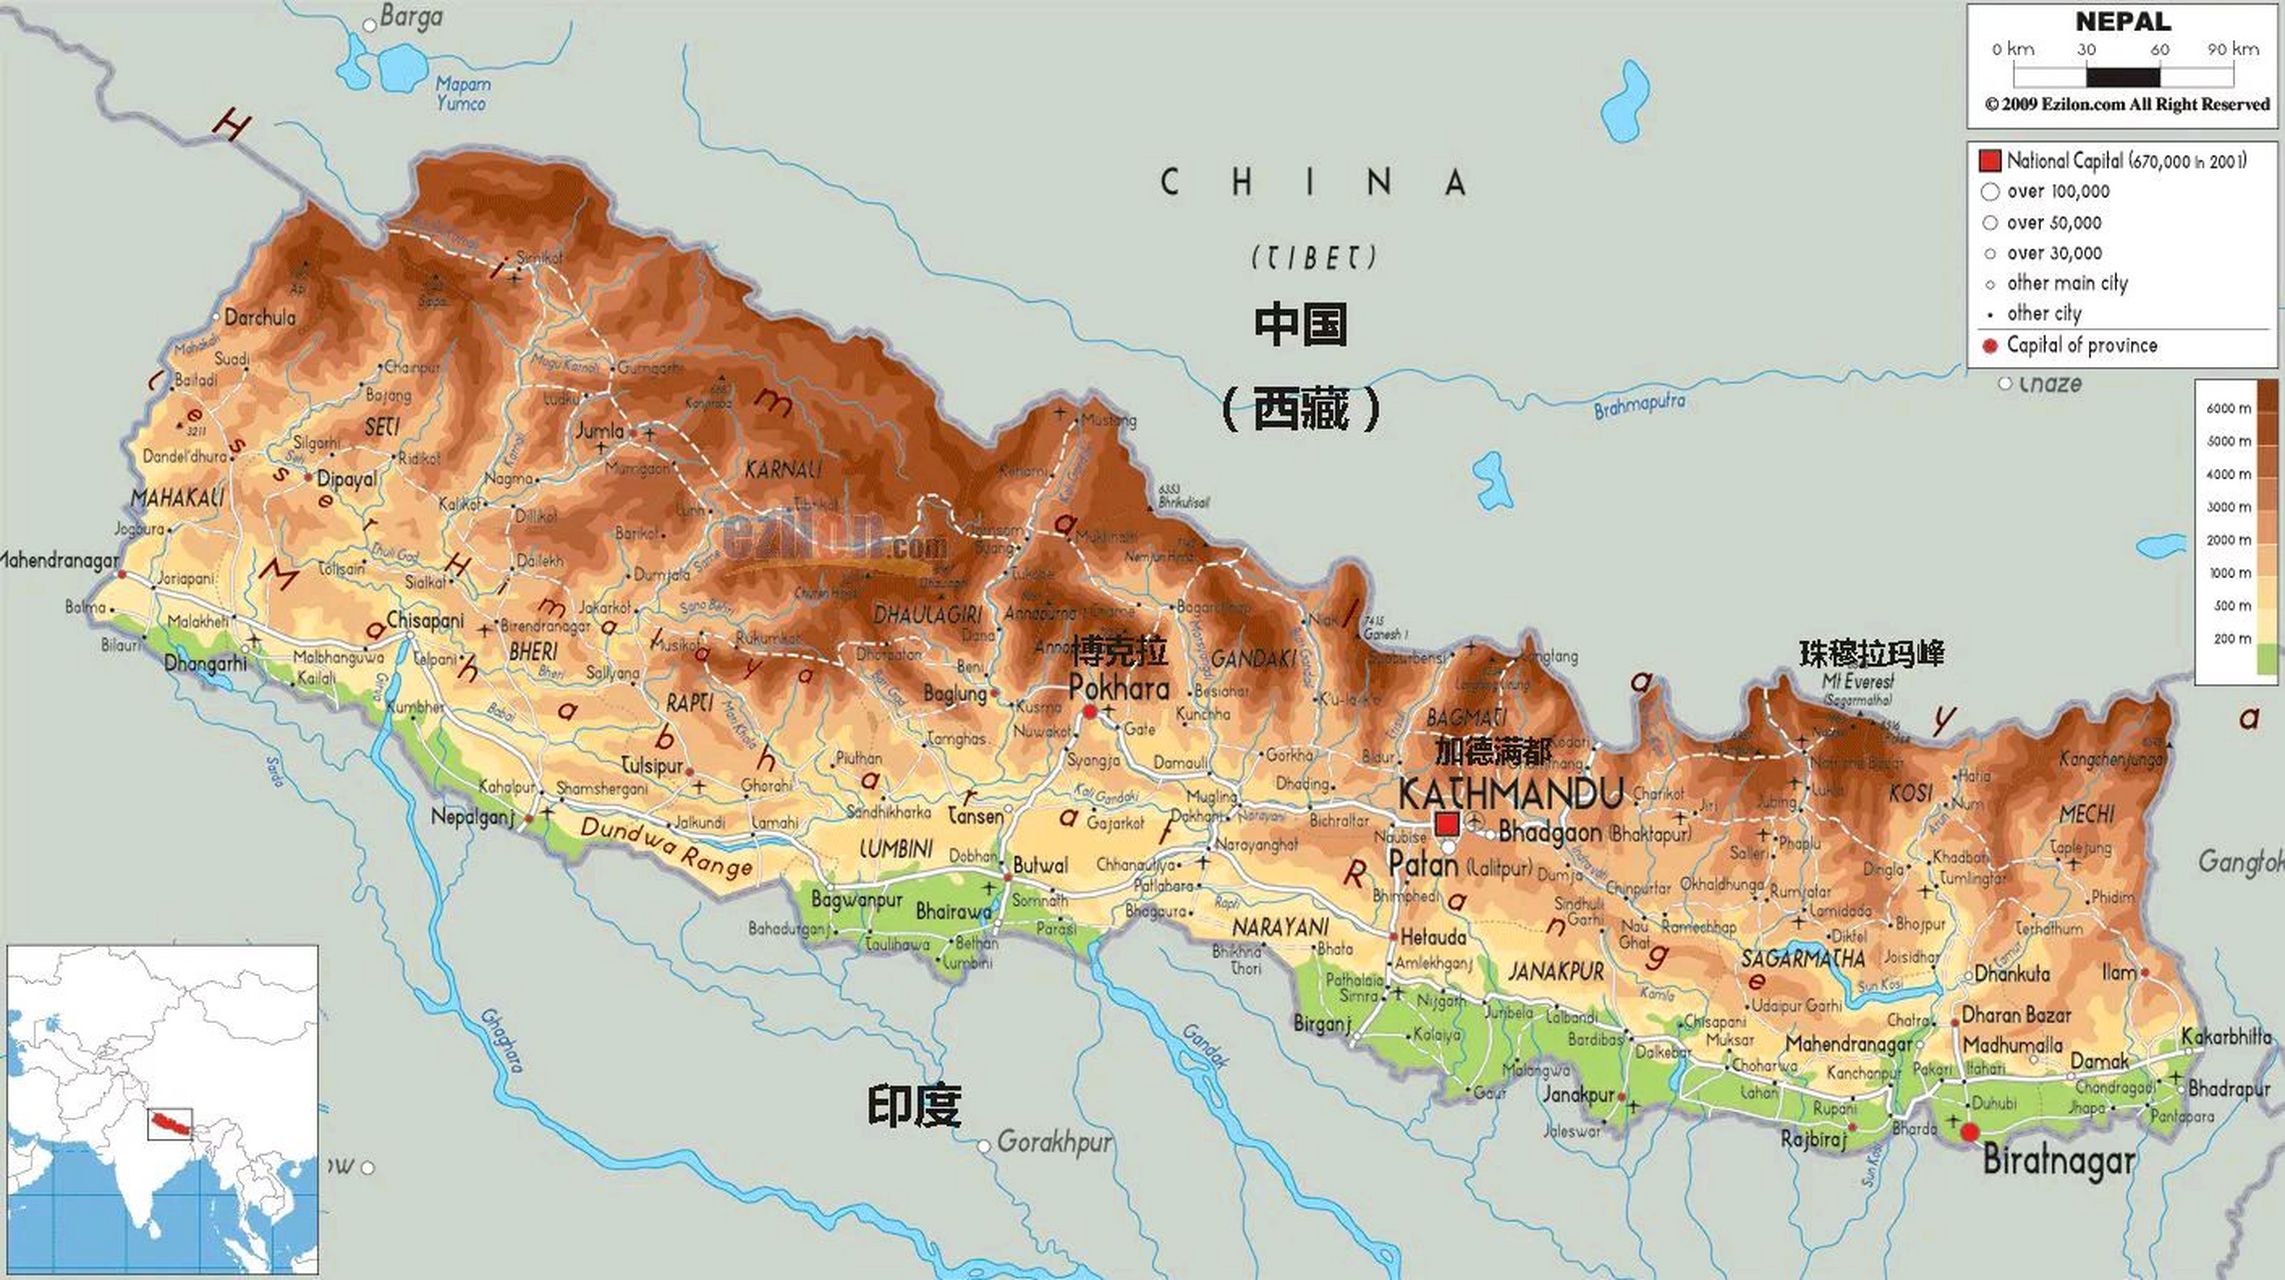 尼泊尔地图全国图片